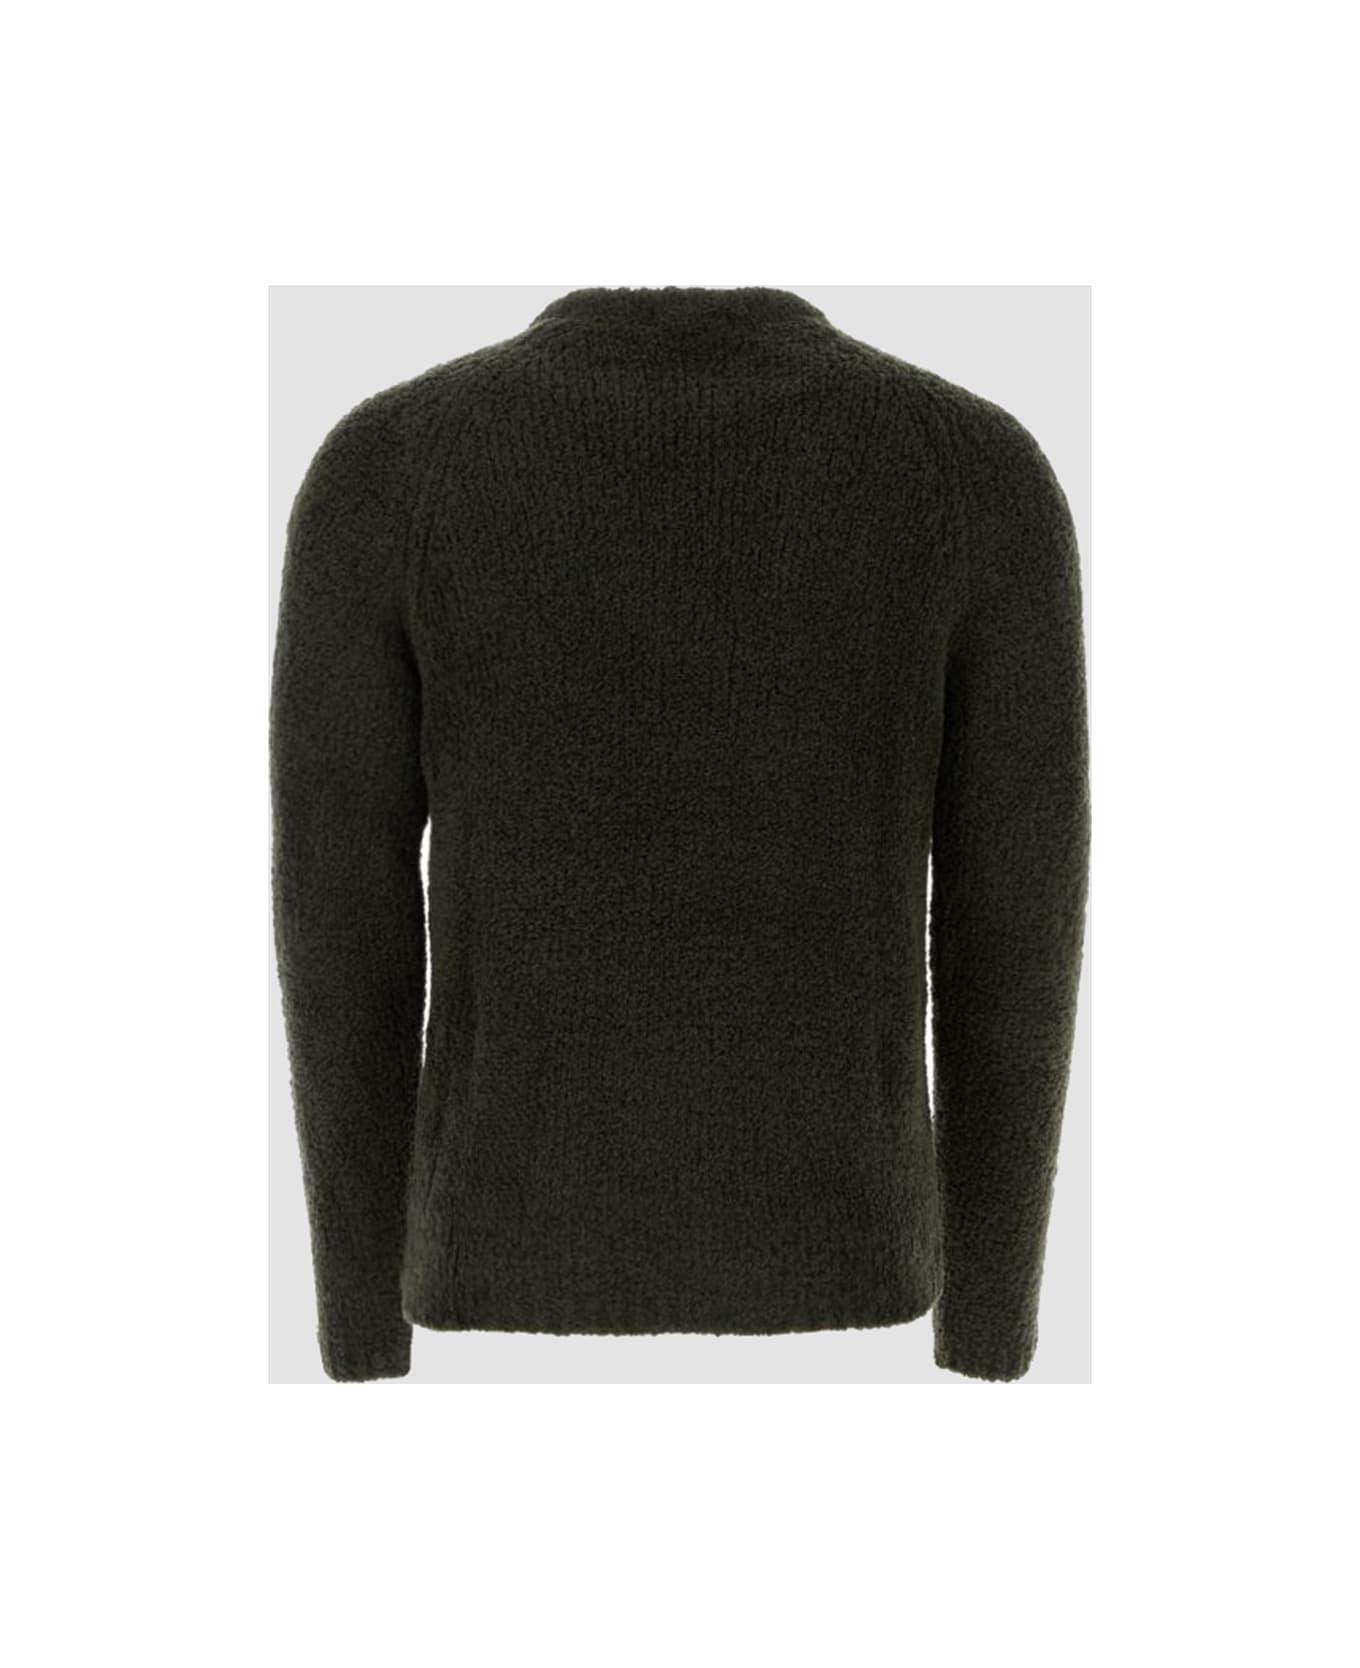 Ten C Dark Green Wool Blend Sweater - Green